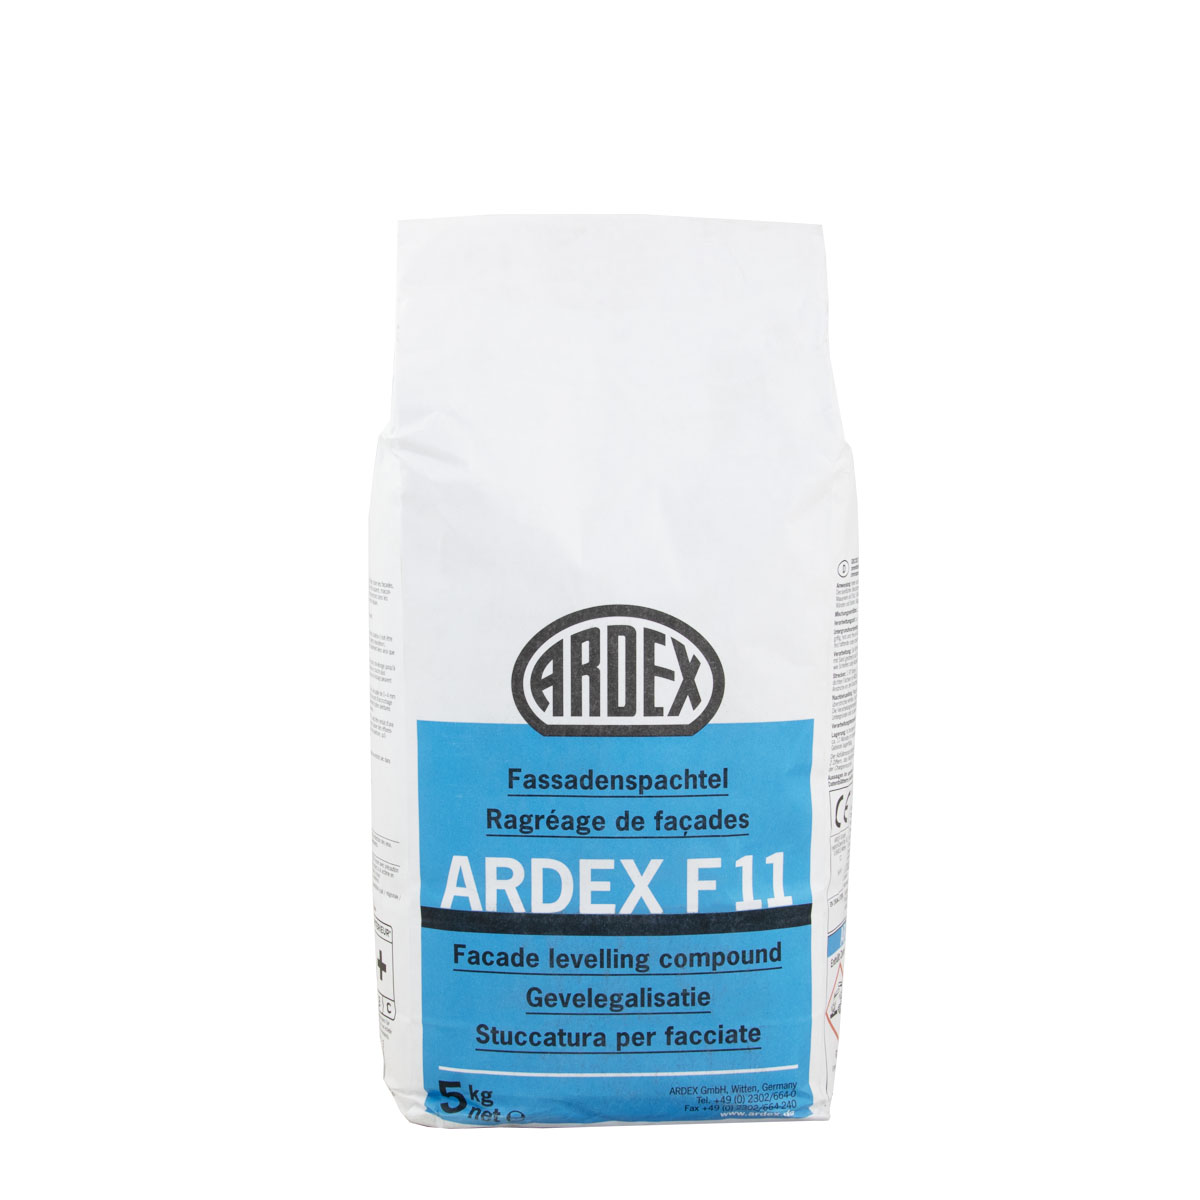 Ardex F11 Fassit Fassadenspachtel 5kg